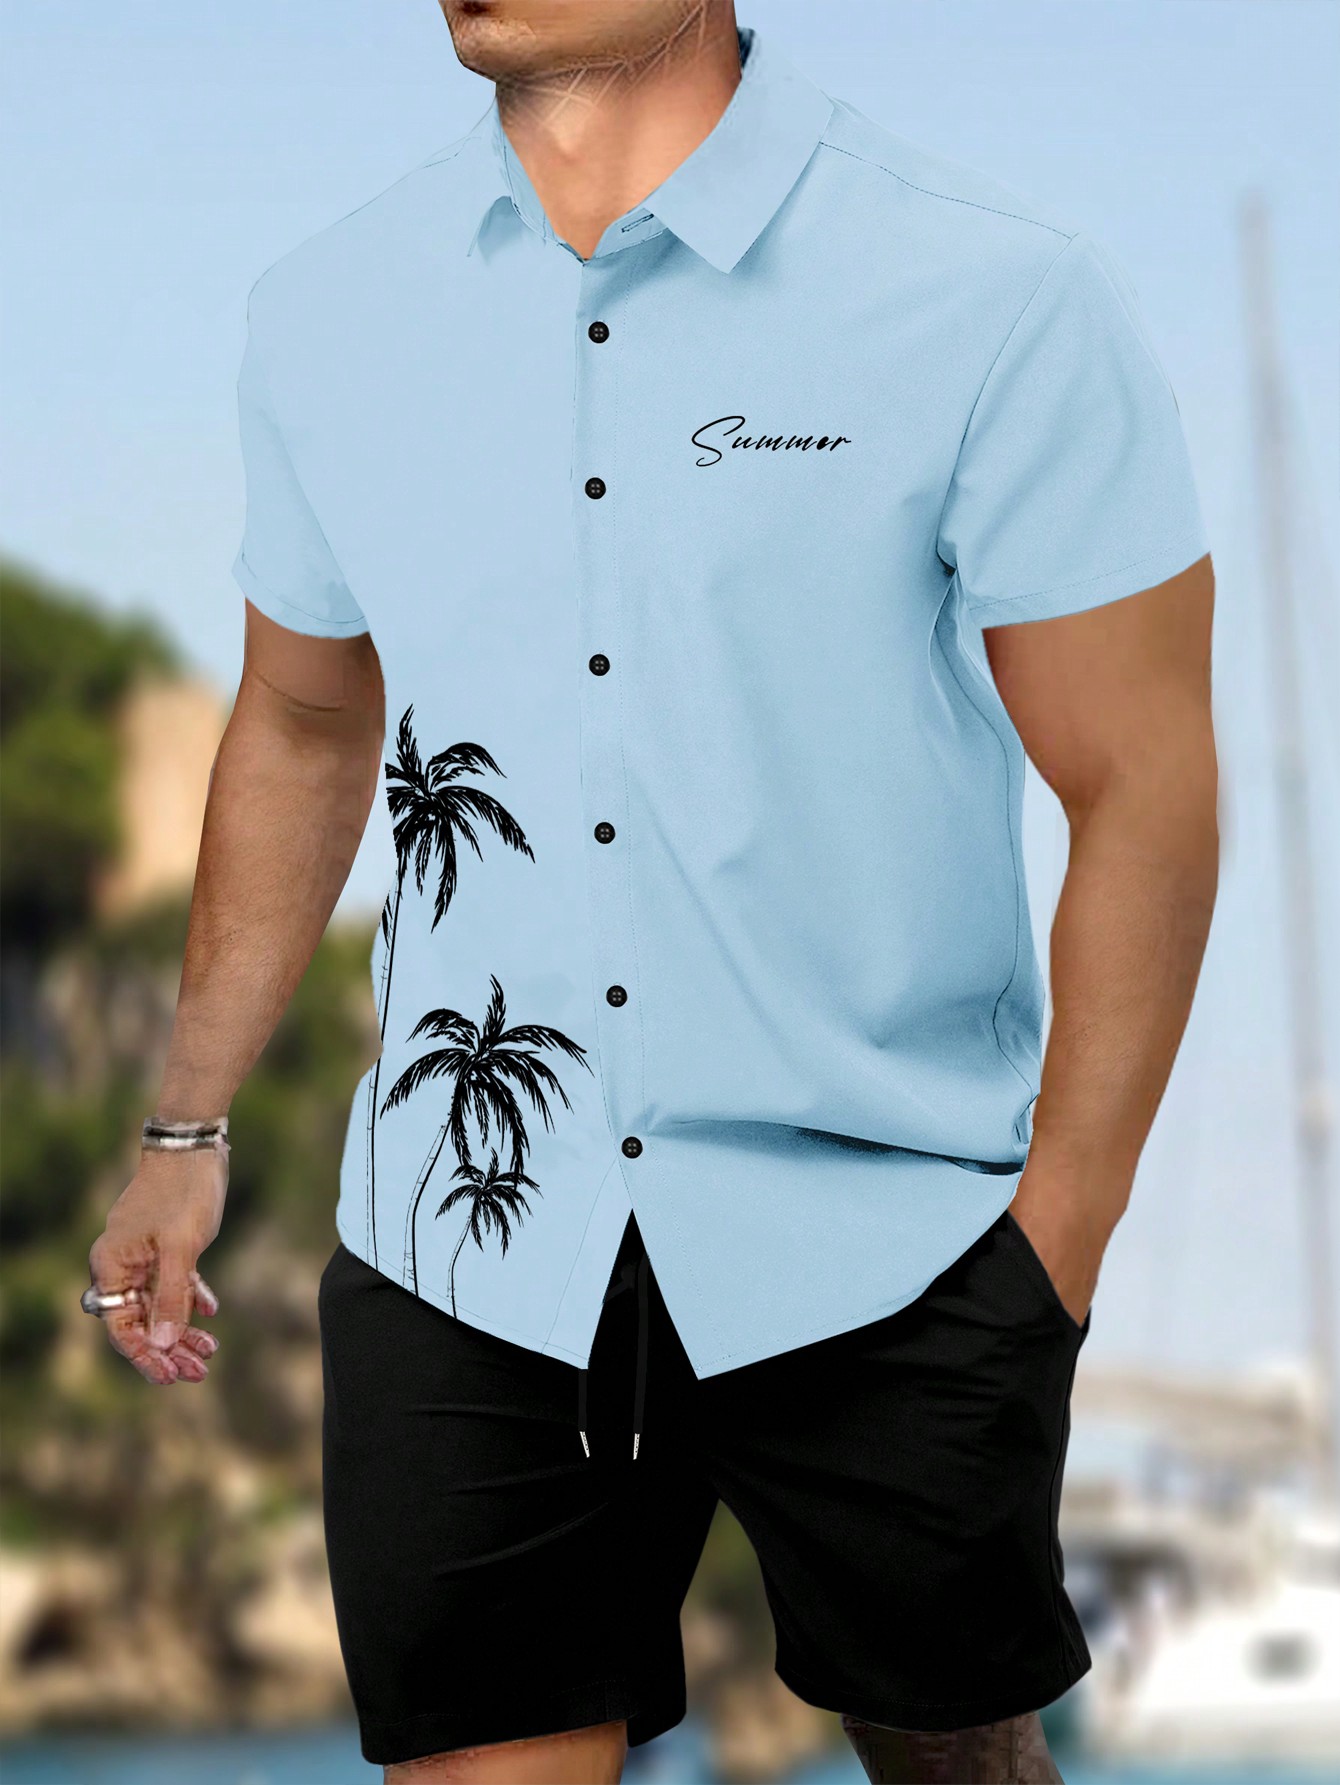 Мужской комплект из рубашки и шорт с короткими рукавами и принтом пальм и букв Manfinity Chillmode, многоцветный